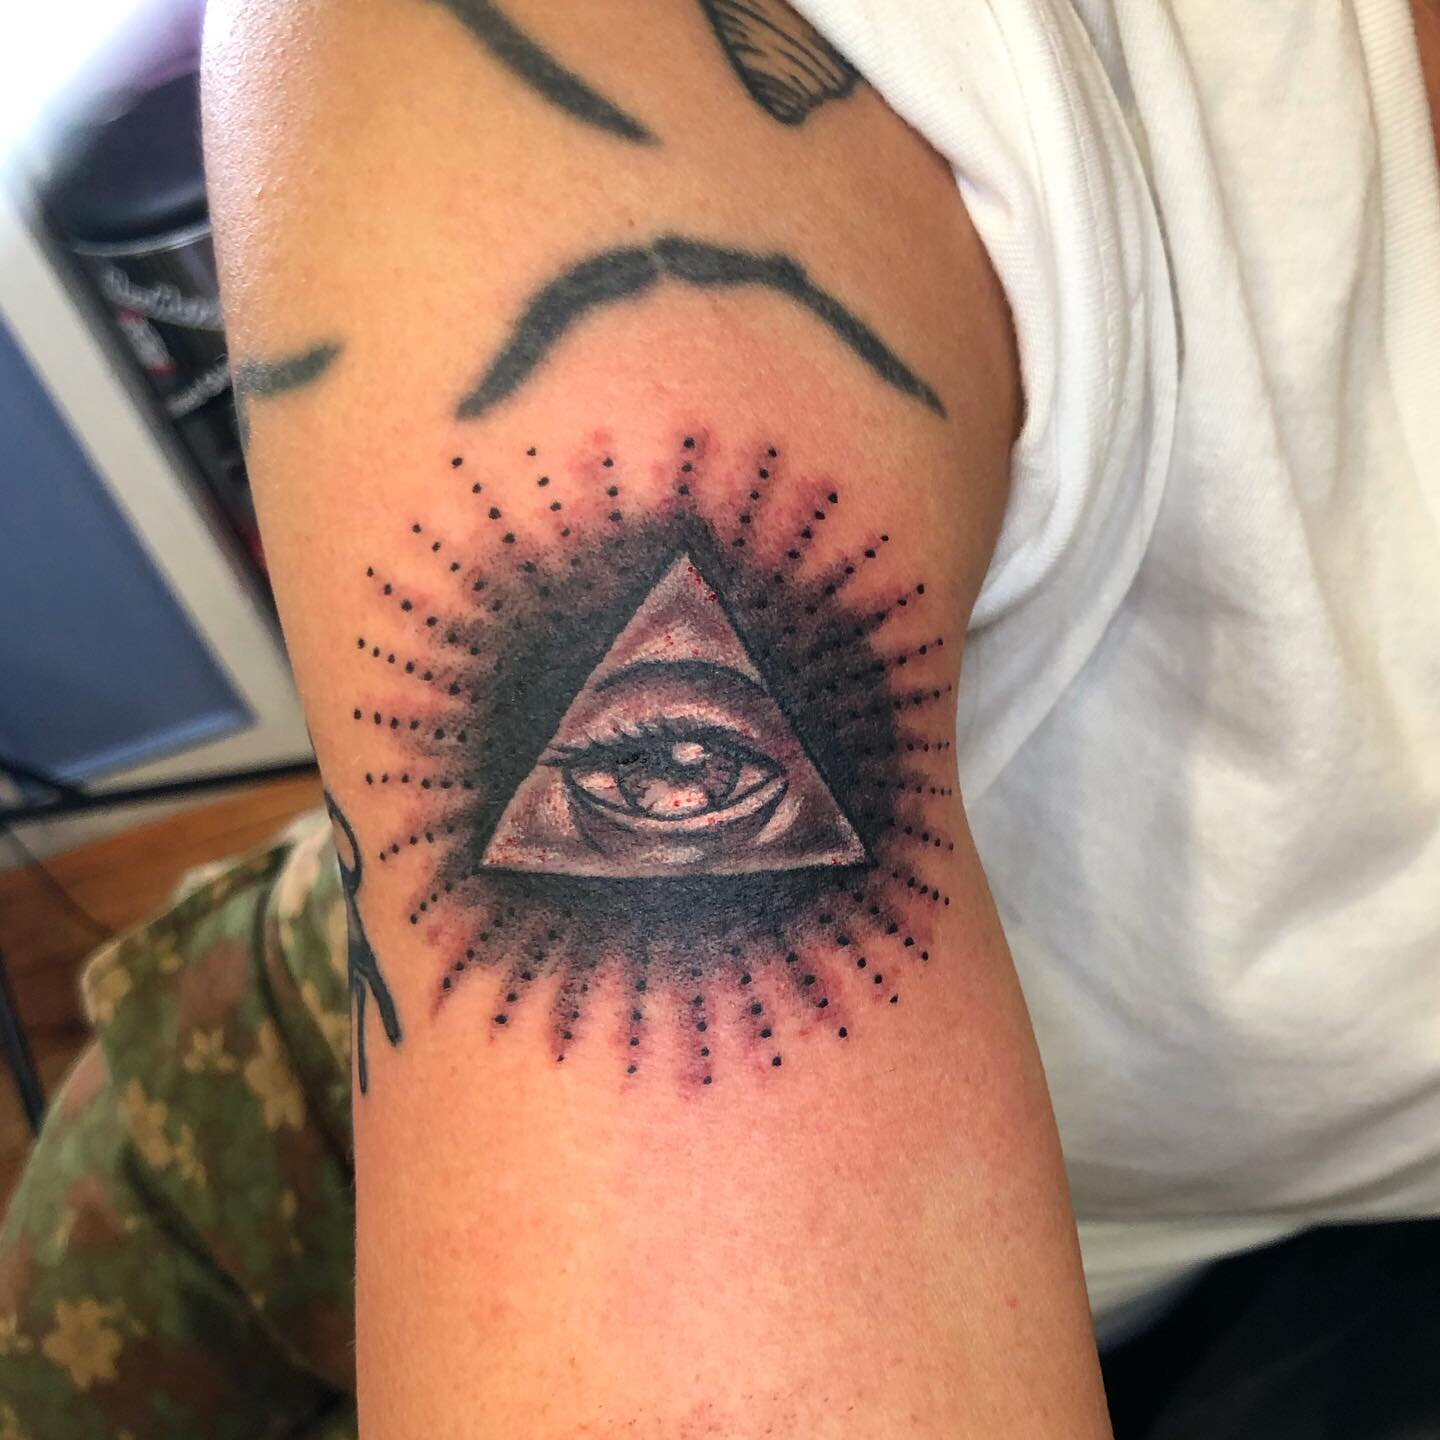 Divine Eye of Providence! Merci! #tattoo #tattoos #illuminati #tattooartist #tattooshop #portland #portlandtattooartist #portlandoregon